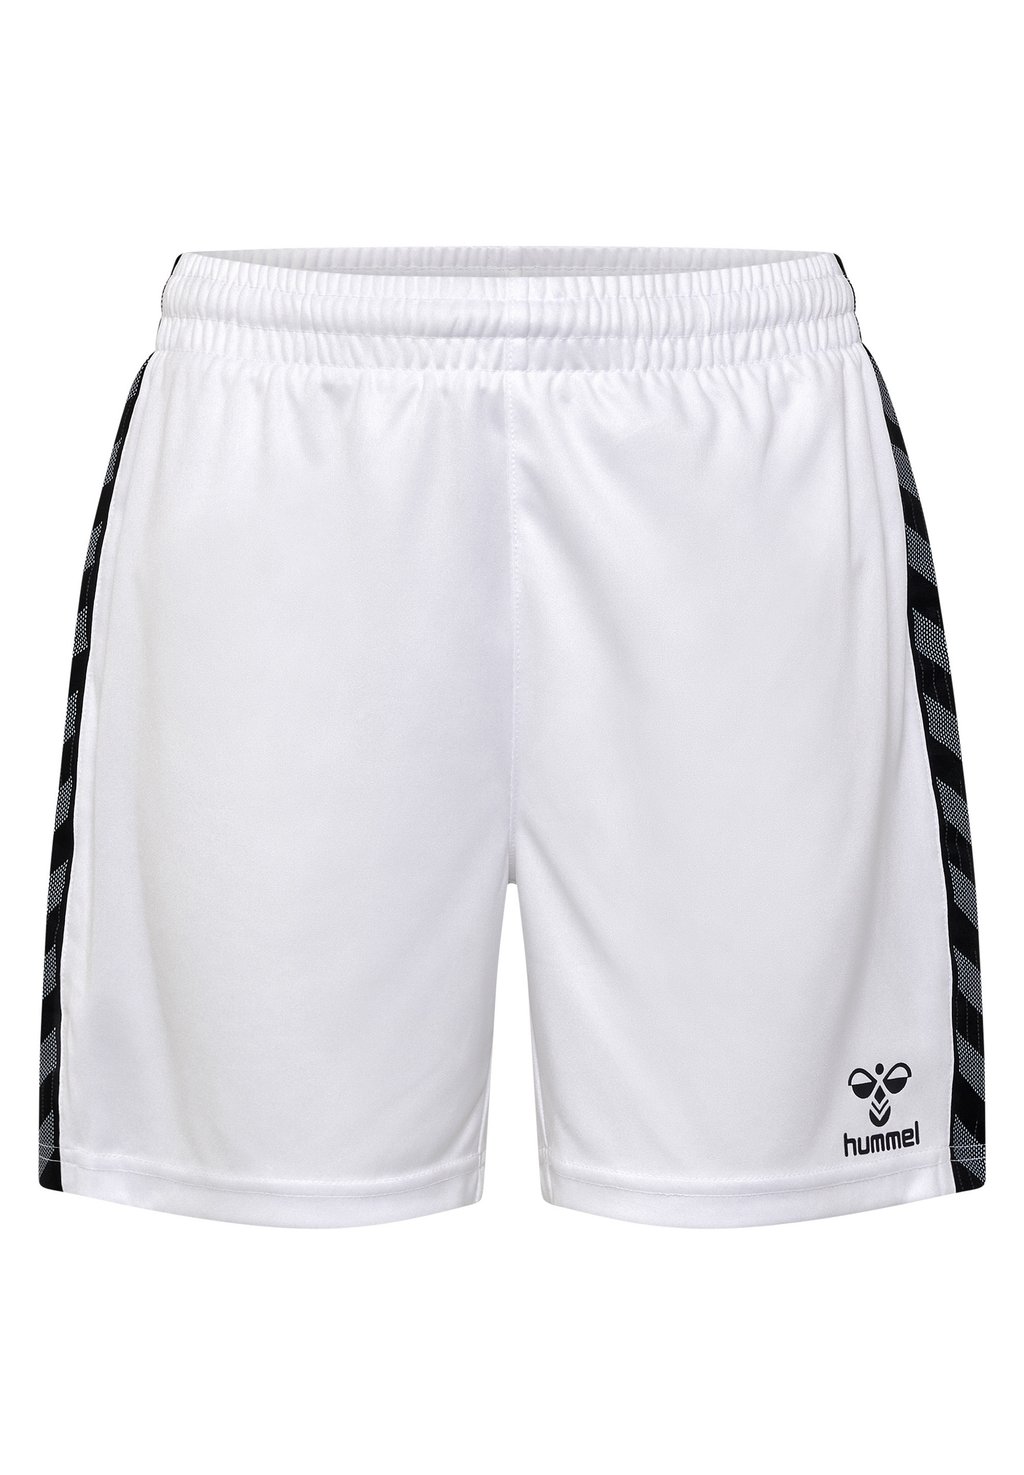 Короткие спортивные брюки AUTHENTIC Hummel, цвет white спортивные брюки authentic hummel цвет black white